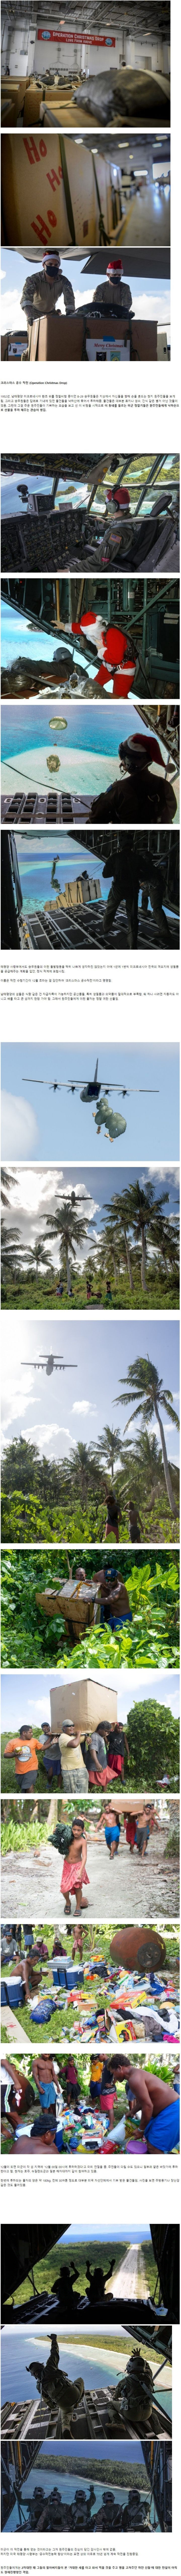 10 미군이 70여년간 동남아 섬에 보급품을 투하하는 이유.jpg